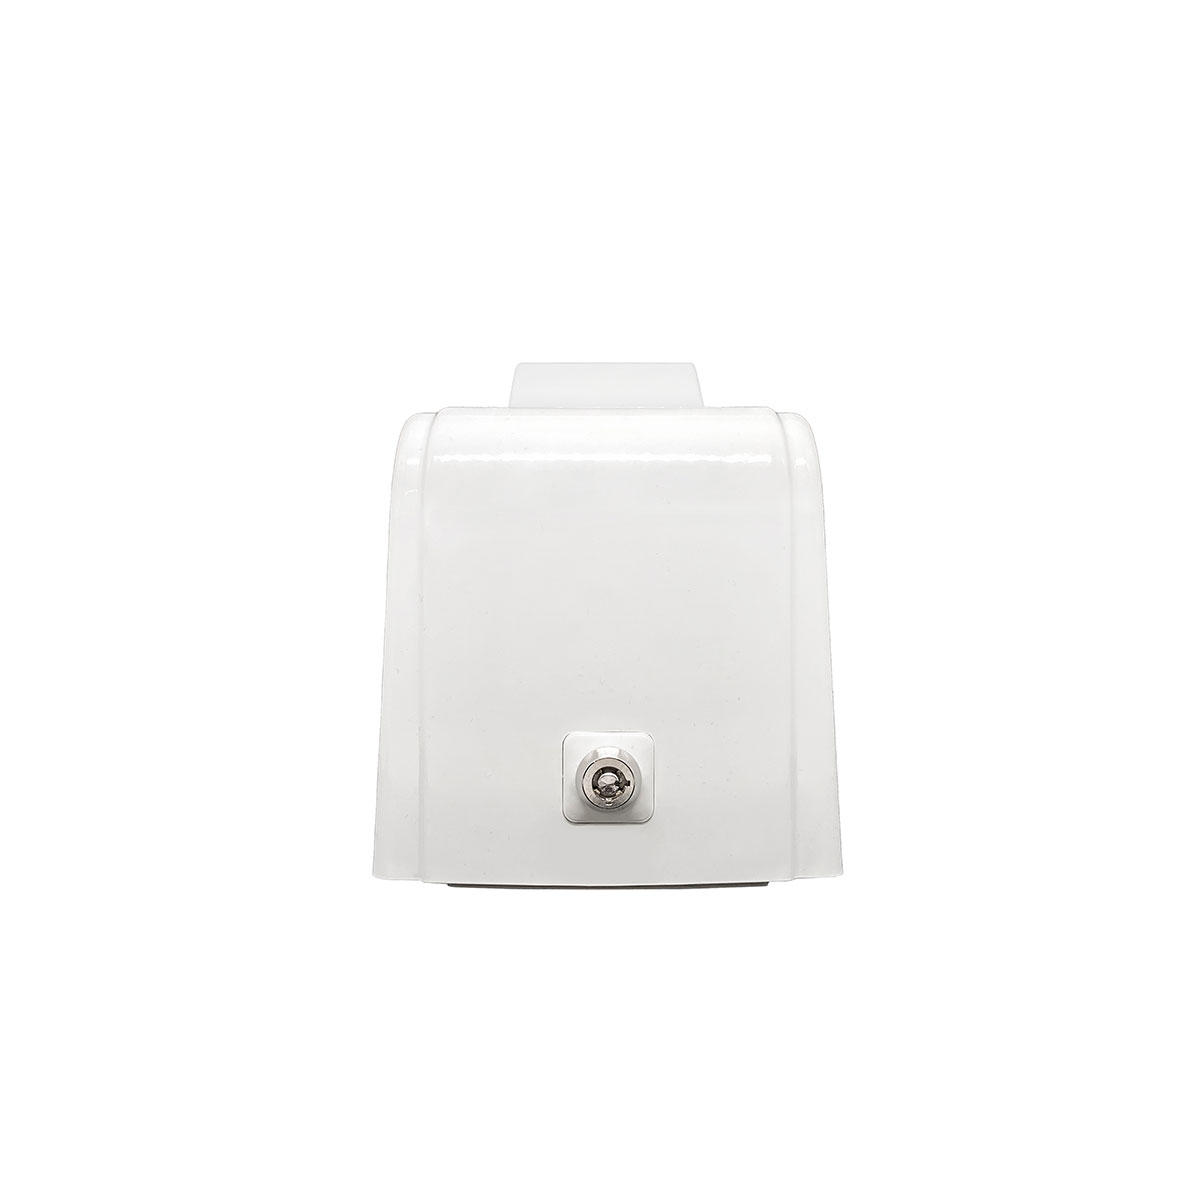 Дозатор для пены X7 нажимной 0,7 л БИЗНЕС, корпус белый, стекло матовое белое, кнопка белая фото 4